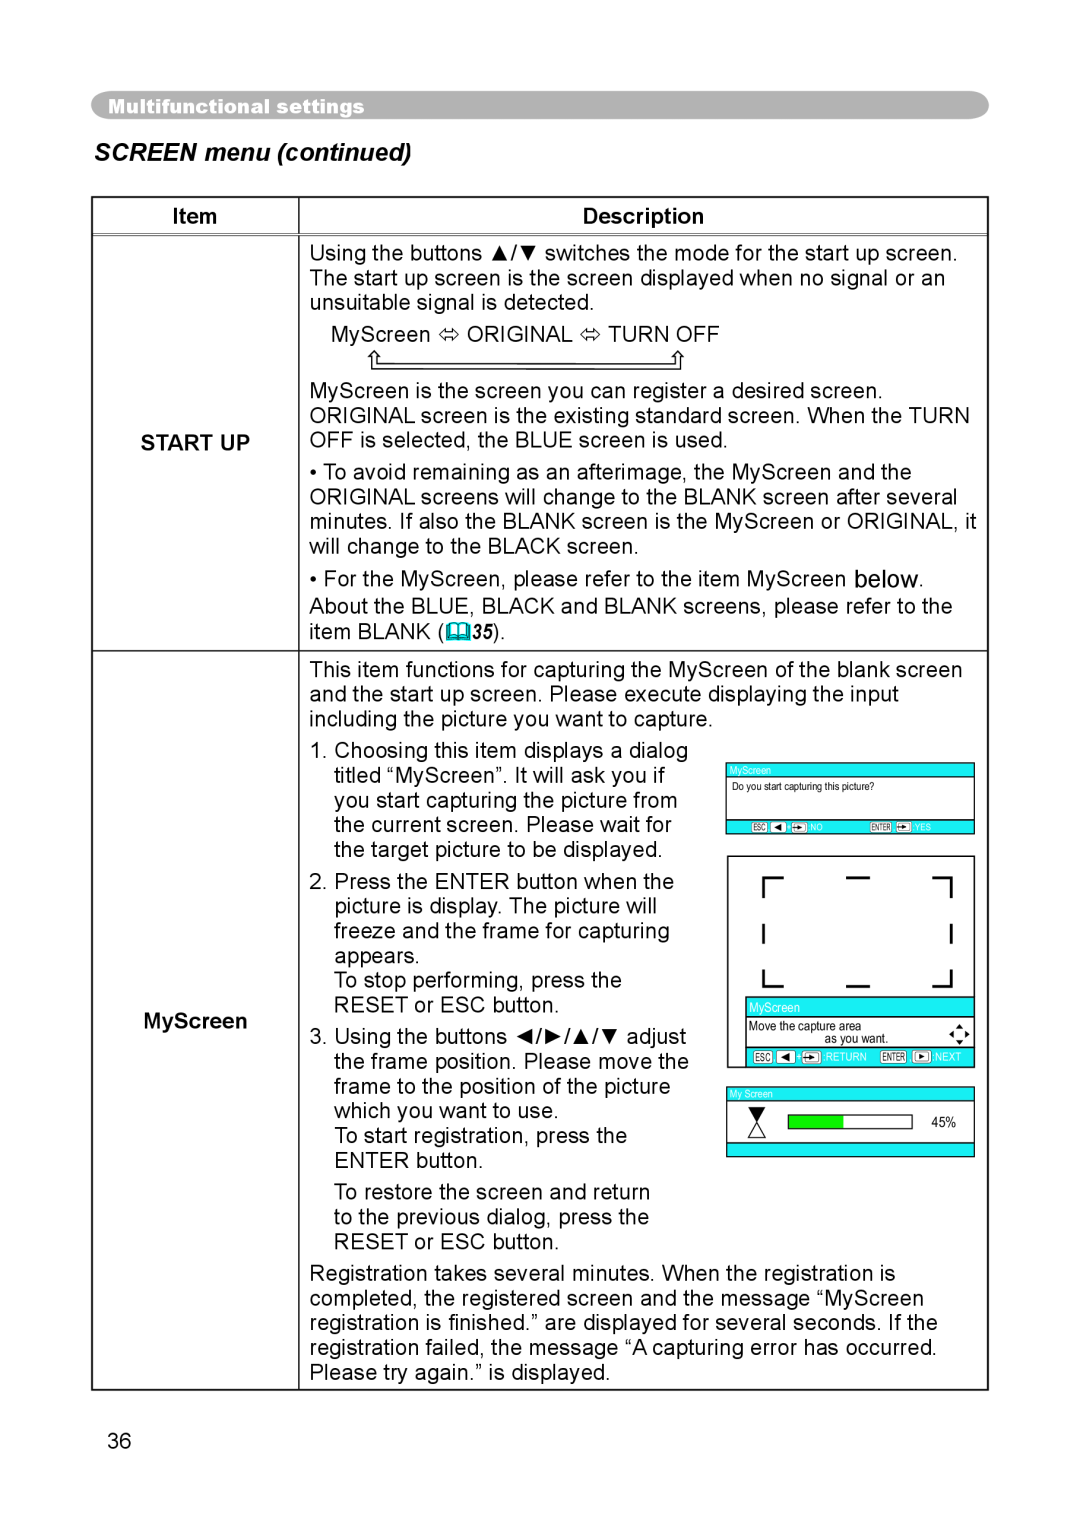 3M S15 manual SCREEN menu continued, START UP MyScreen, Description 